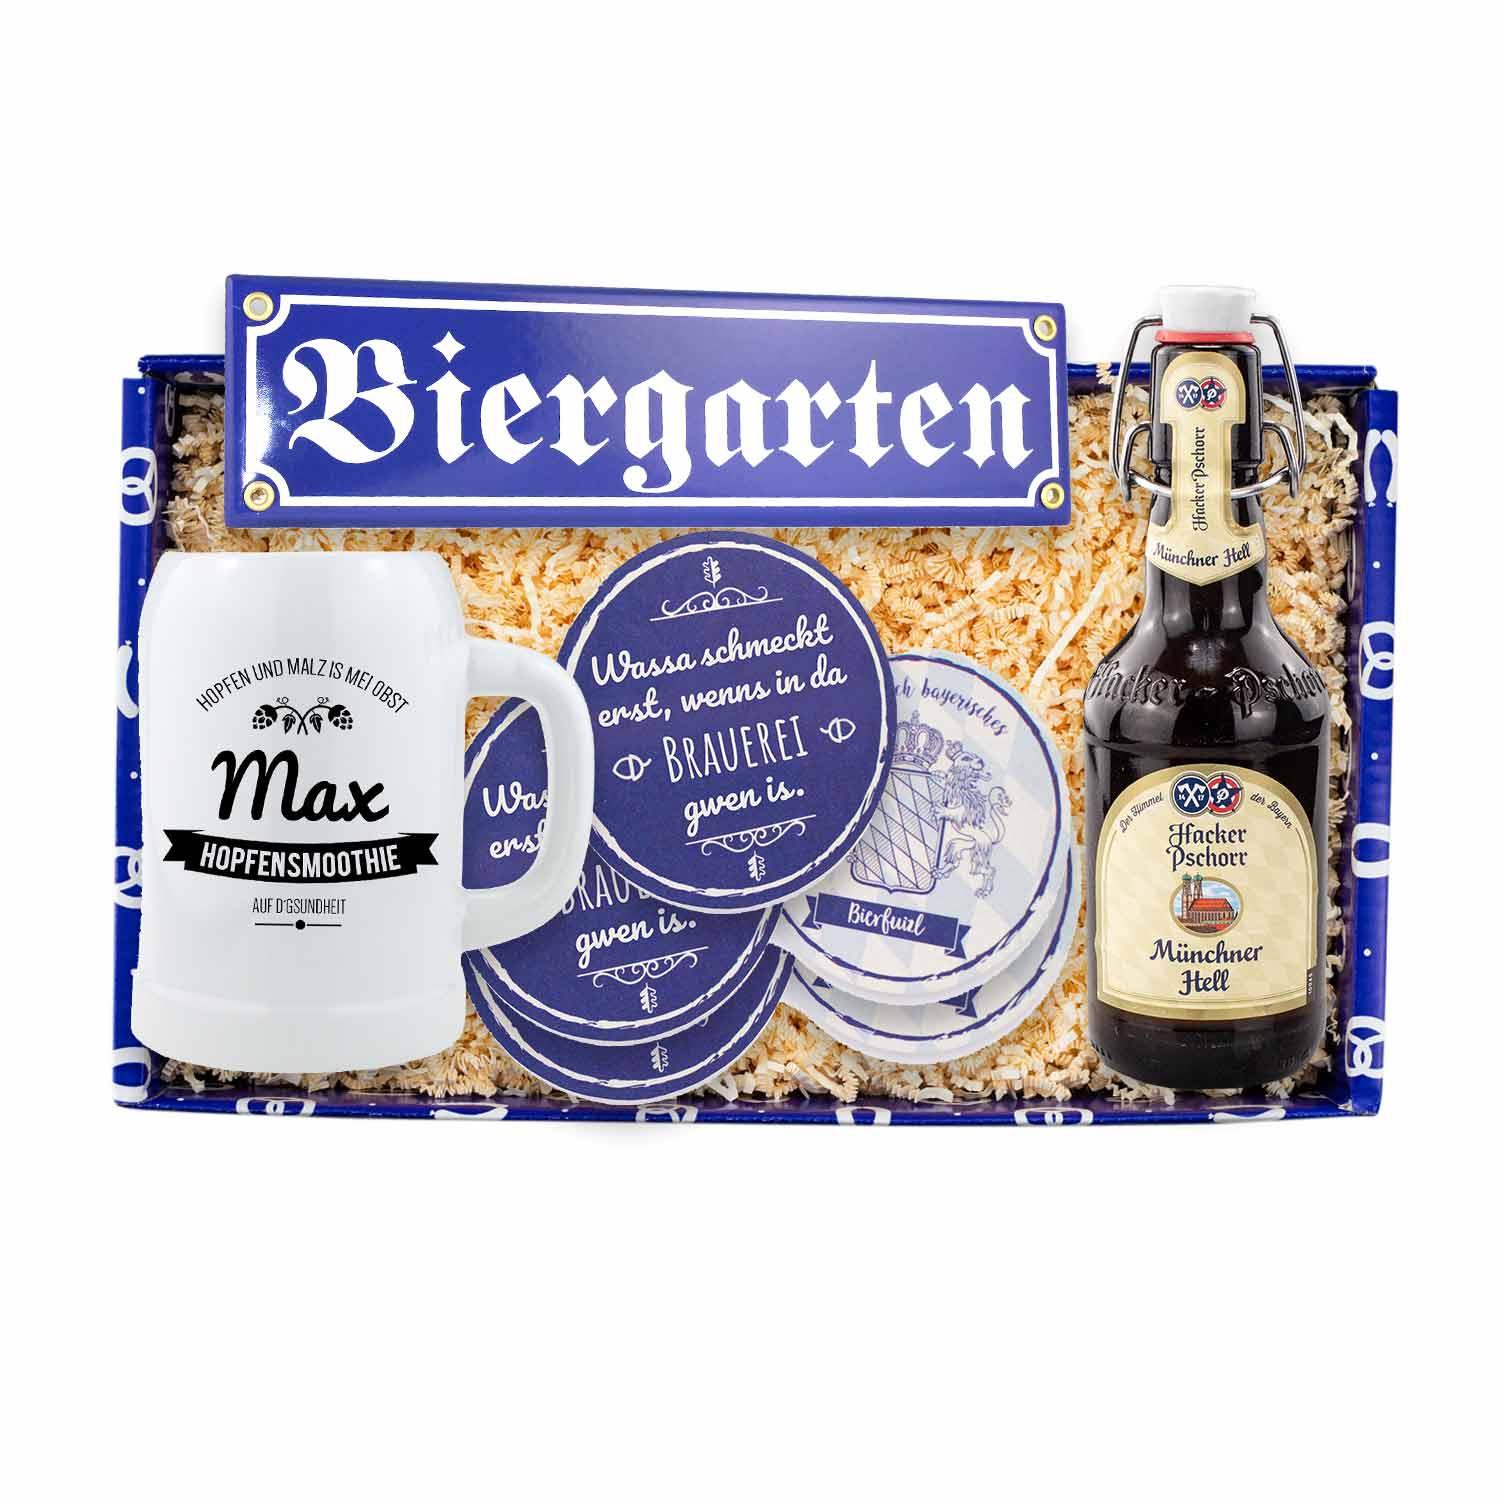 Geschenkbox "Bier is guad" - bavariashop - mei LebensGfui